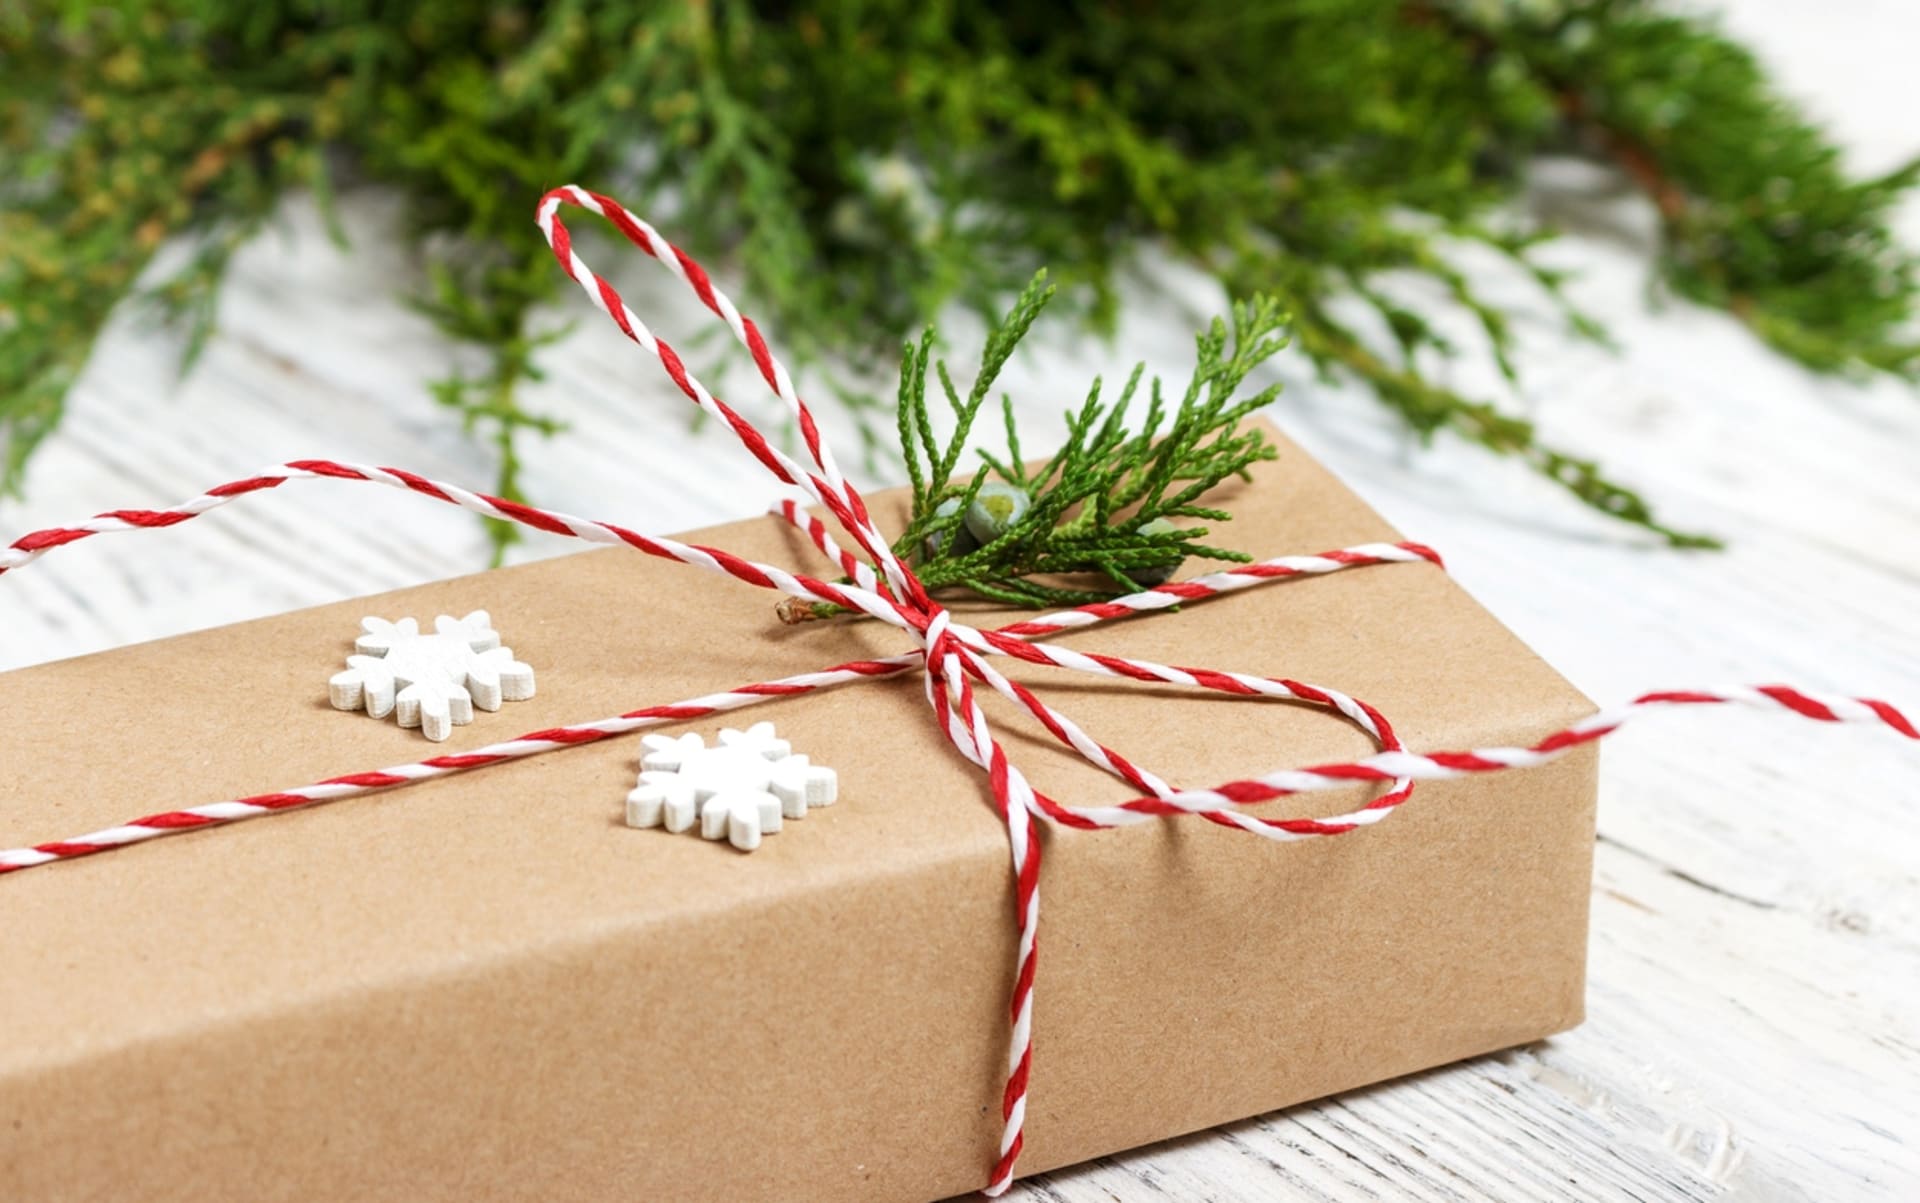 DIY vánoční dárky podle horoskopu:  Váhy ocení jemný vkus, pozor na kýče se třpytkami.